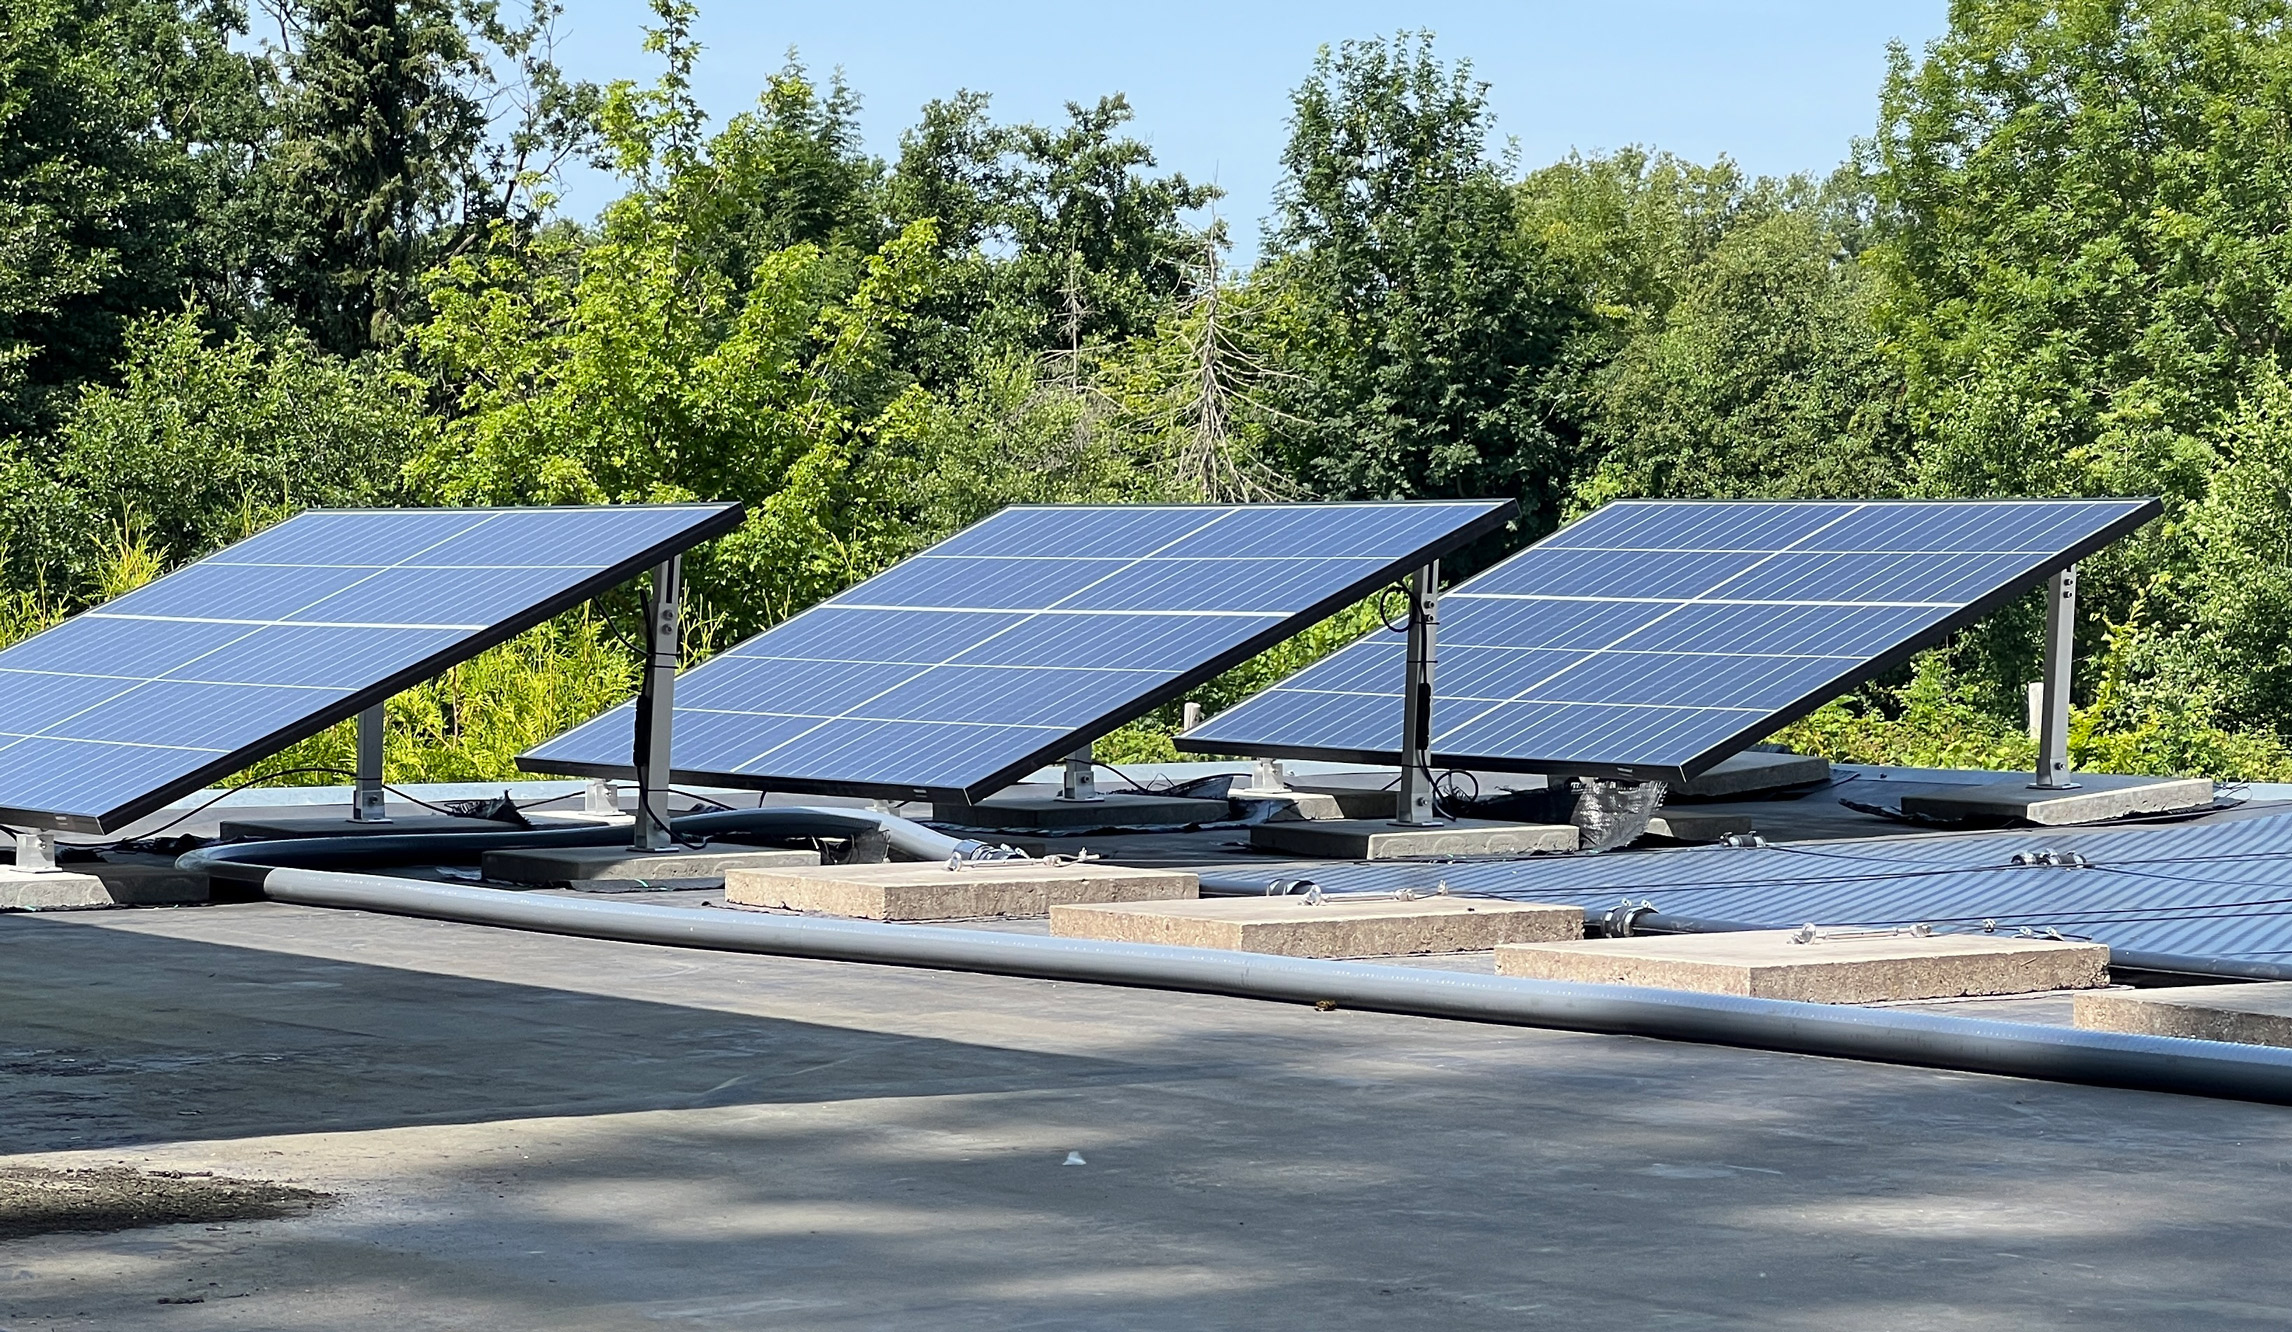 CarSet, Solar-Lade-Set mit 40-Watt Solarmodul für Auto-Batterien